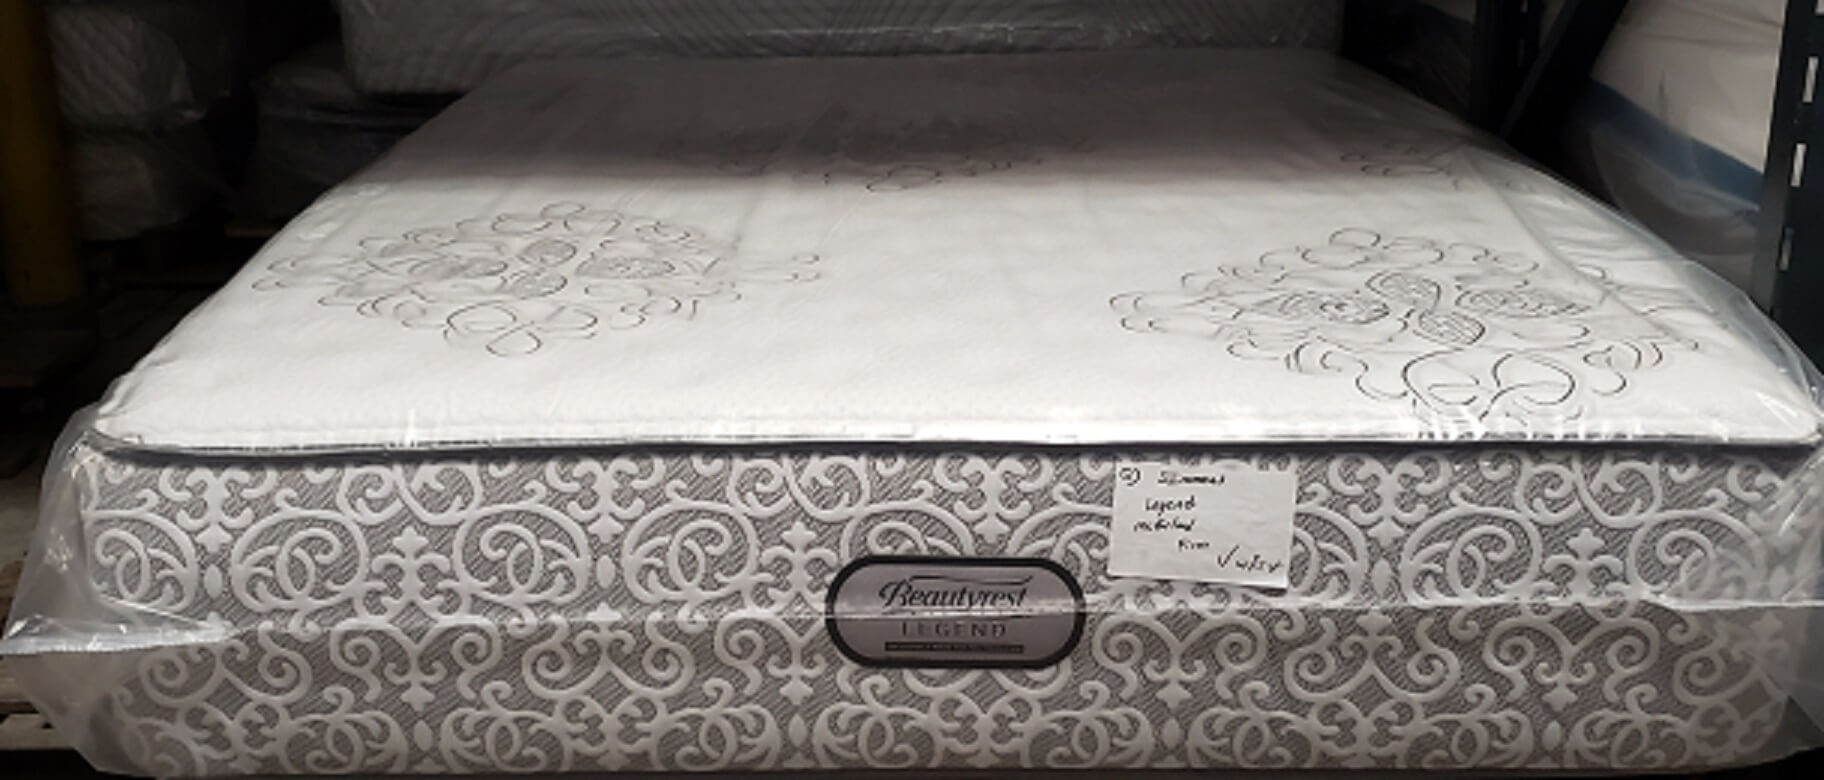 mcfarland firm legends mattress king price